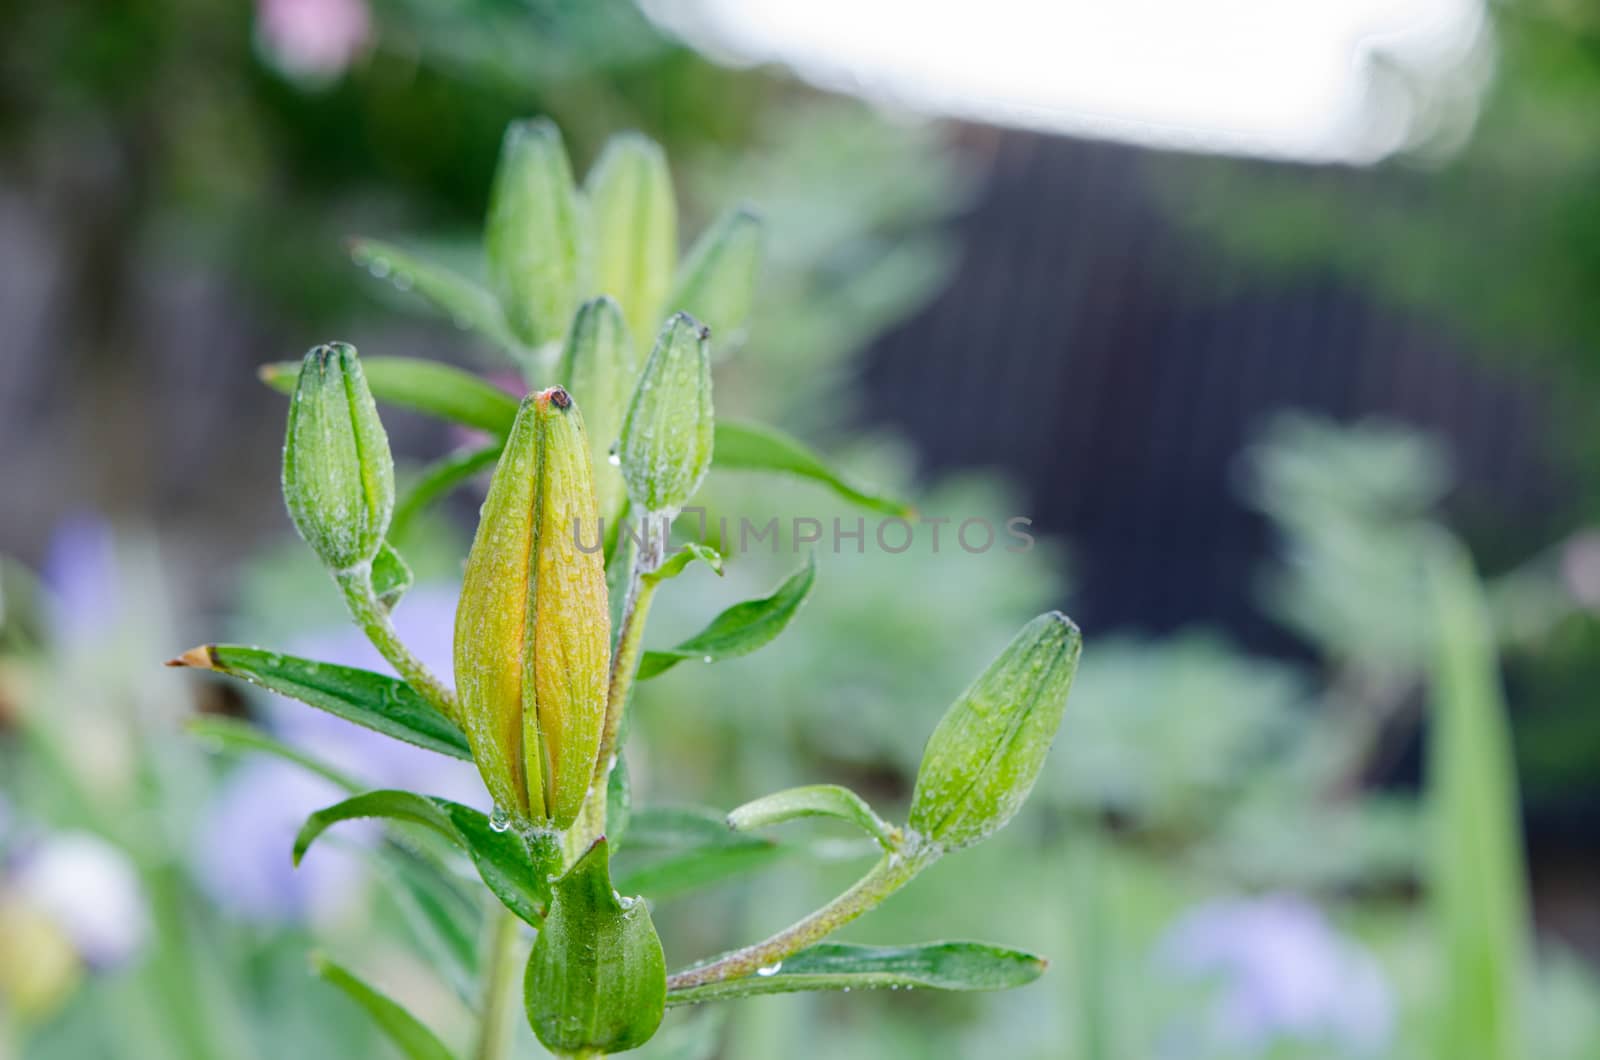 lily (Lilium) bud on rainy day spring by sauletas